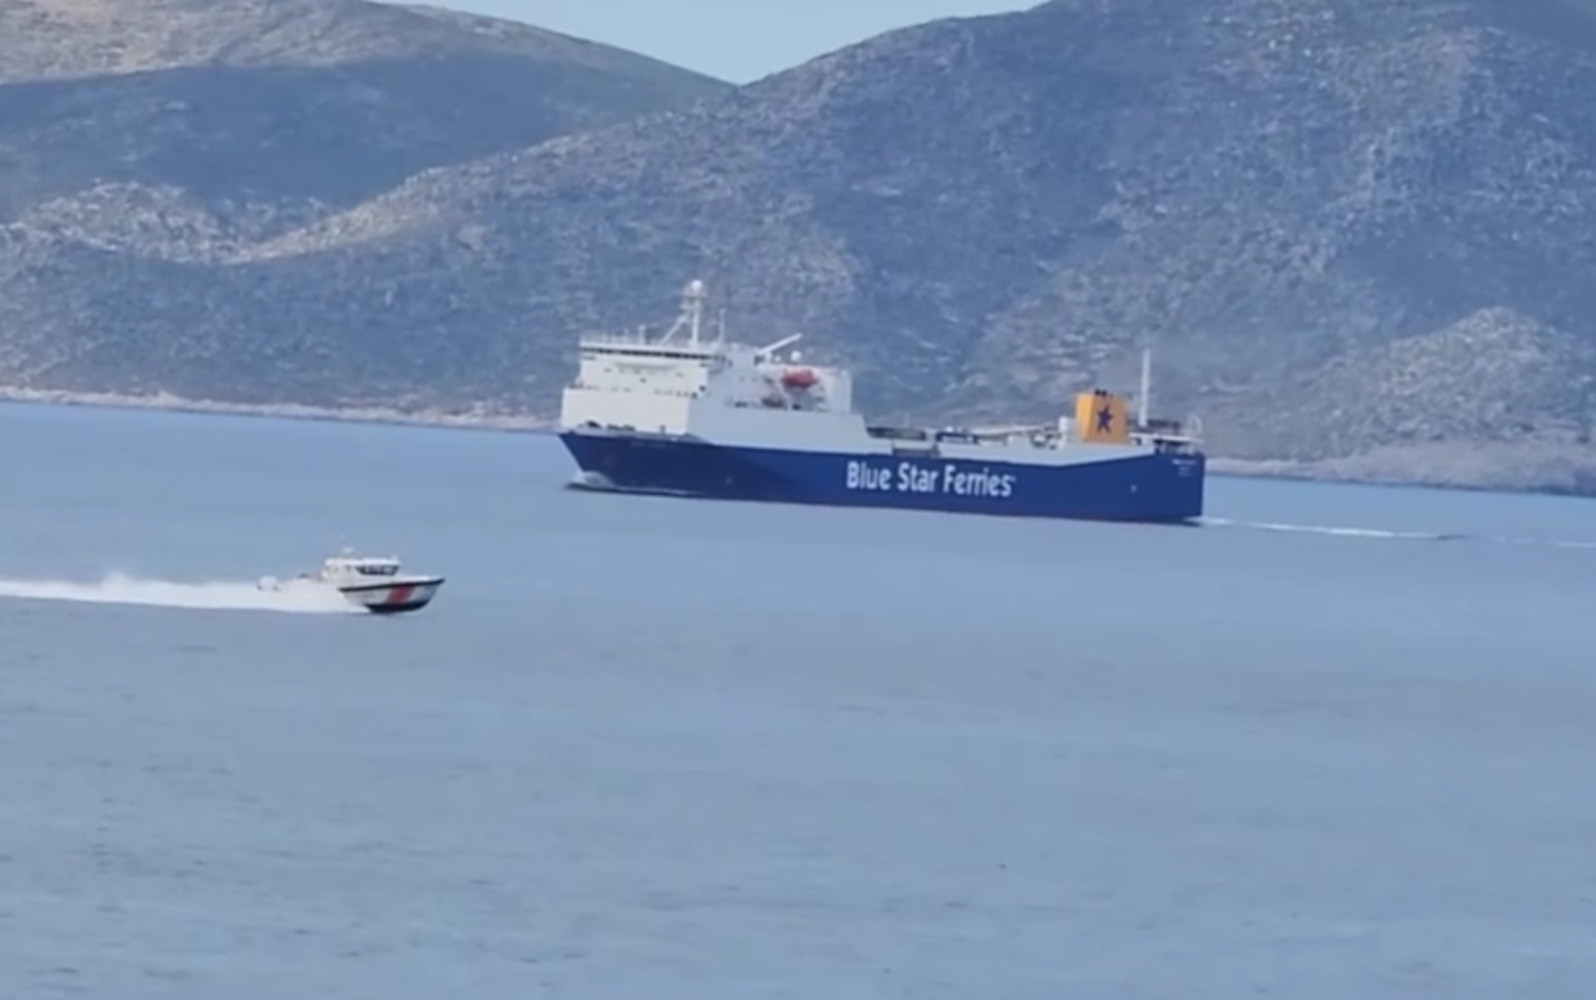 Ίμια: Τουρκική ακταιωρός μπήκε σε ελληνικά χωρικά ύδατα και ήρθε μια ανάσα από σκάφος του Λιμενικού